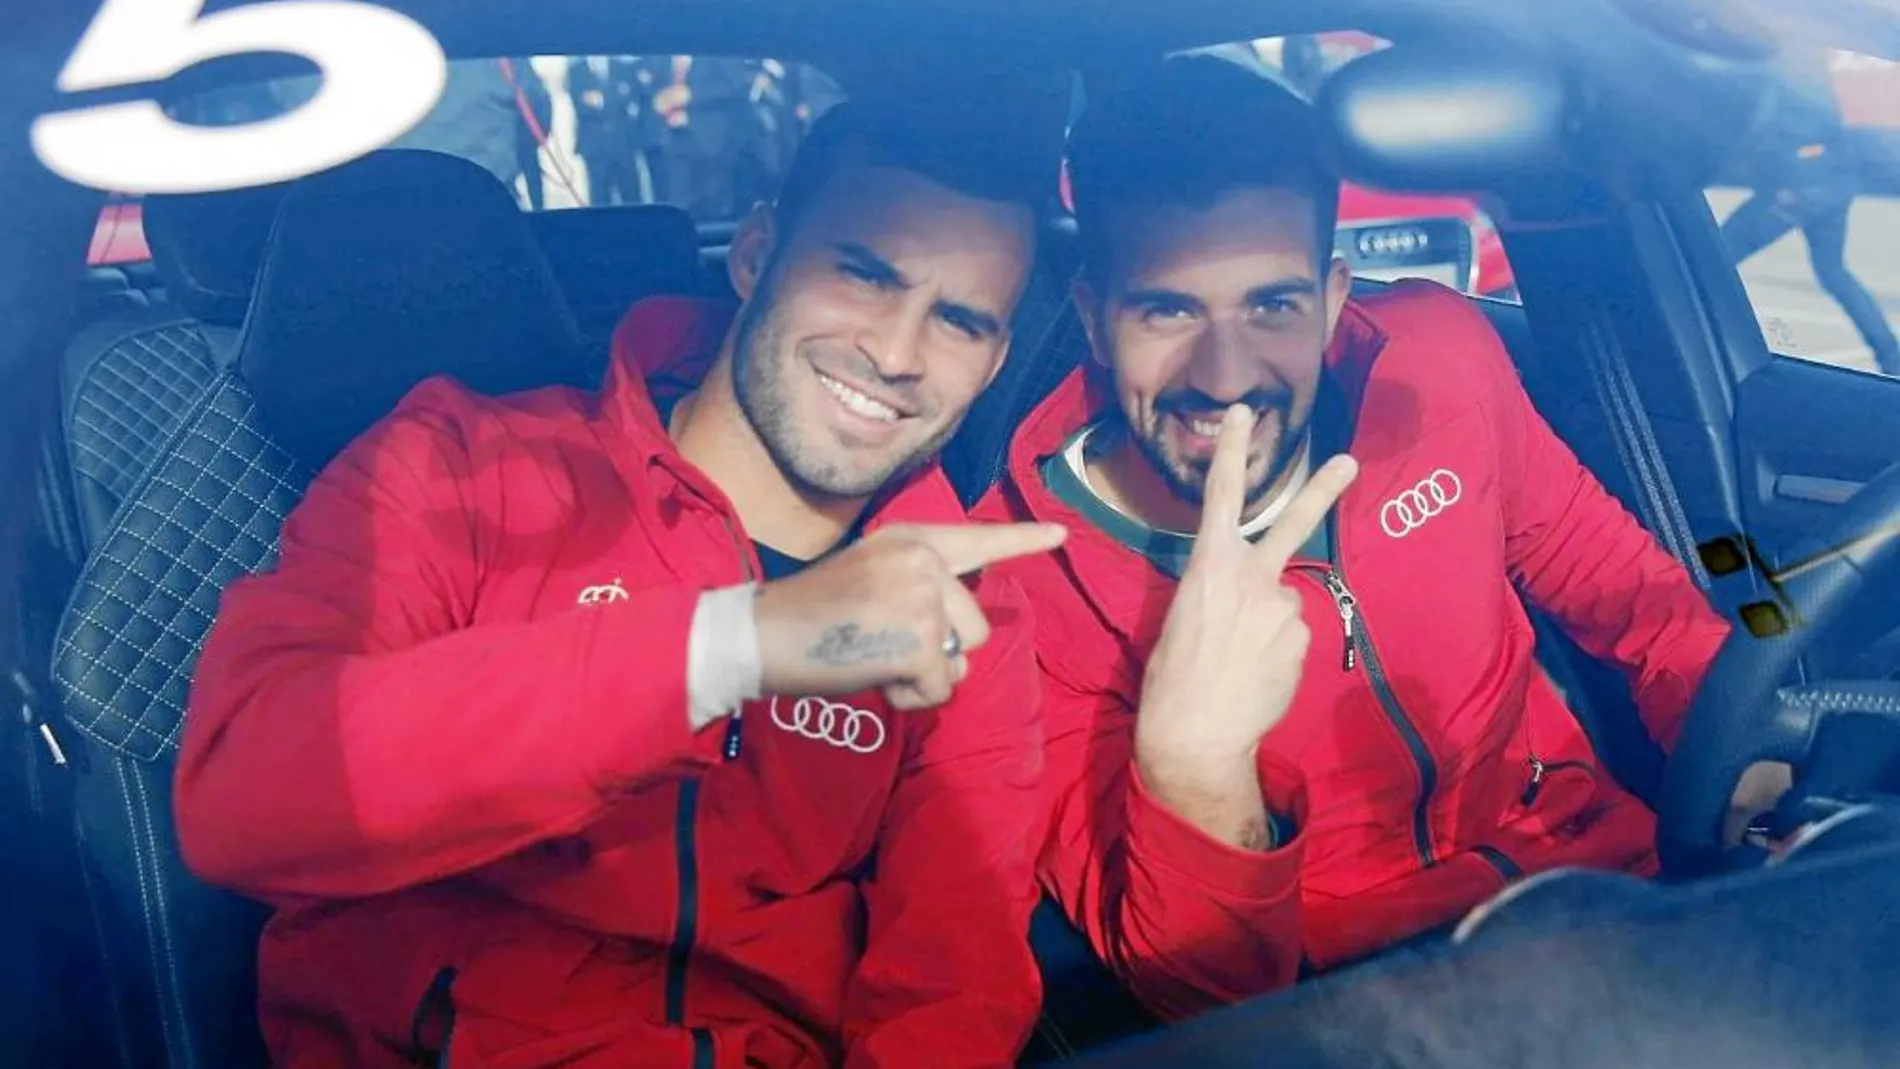 Jesé, en la imagen junto al portero Pacheco, recibió ayer, como el resto de los futbolistas del Madrid, un coche de Audi.